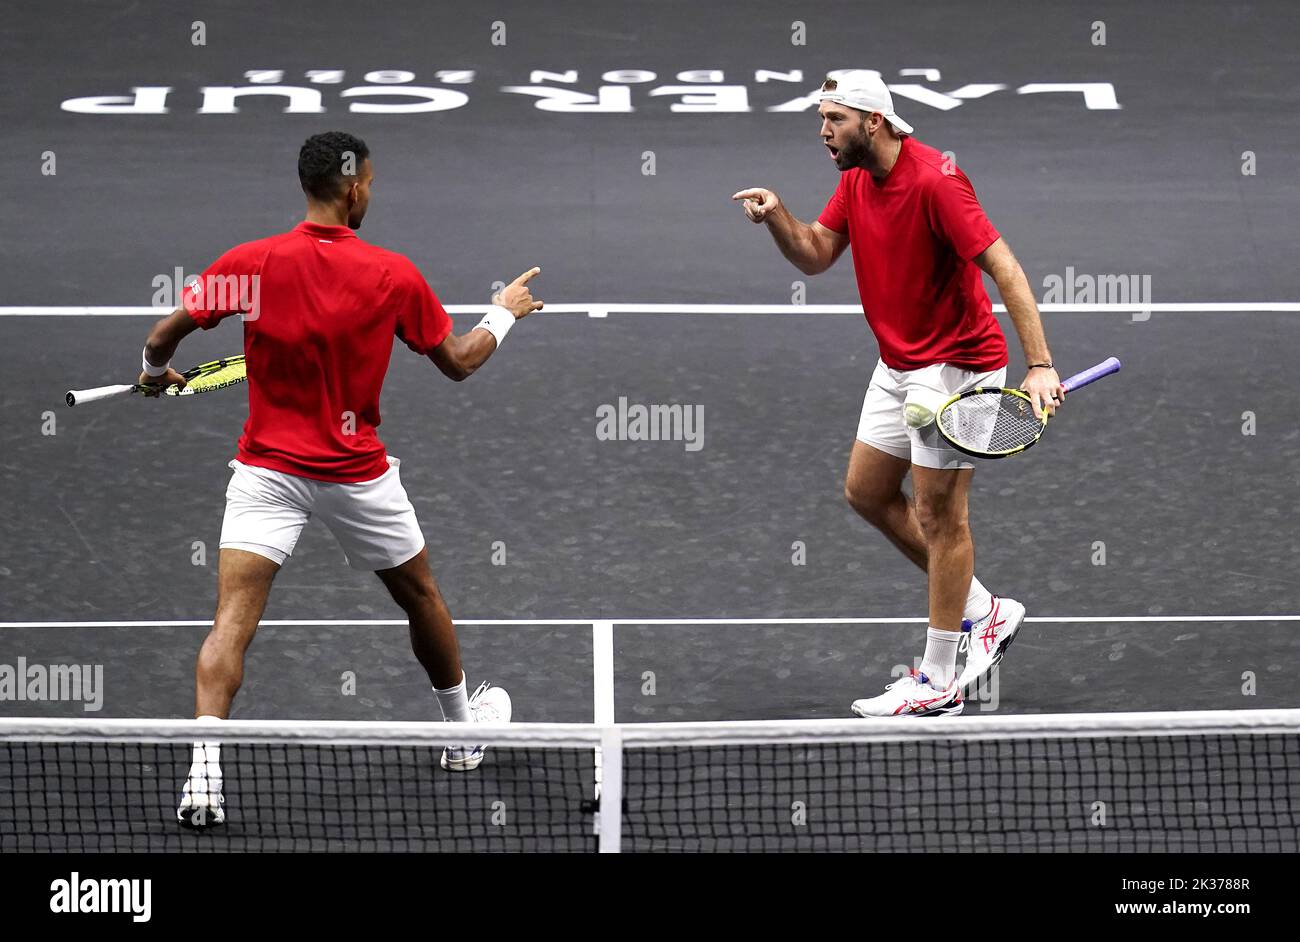 Felix Auger Aliassime (izquierda) y Jack Sock celebran un punto contra Andy Murray y Matteo Berrettini en el partido de dobles del tercer día de la Copa Laver en el O2 Arena, Londres. Fecha de la foto: Domingo 25 de septiembre de 2022. Foto de stock